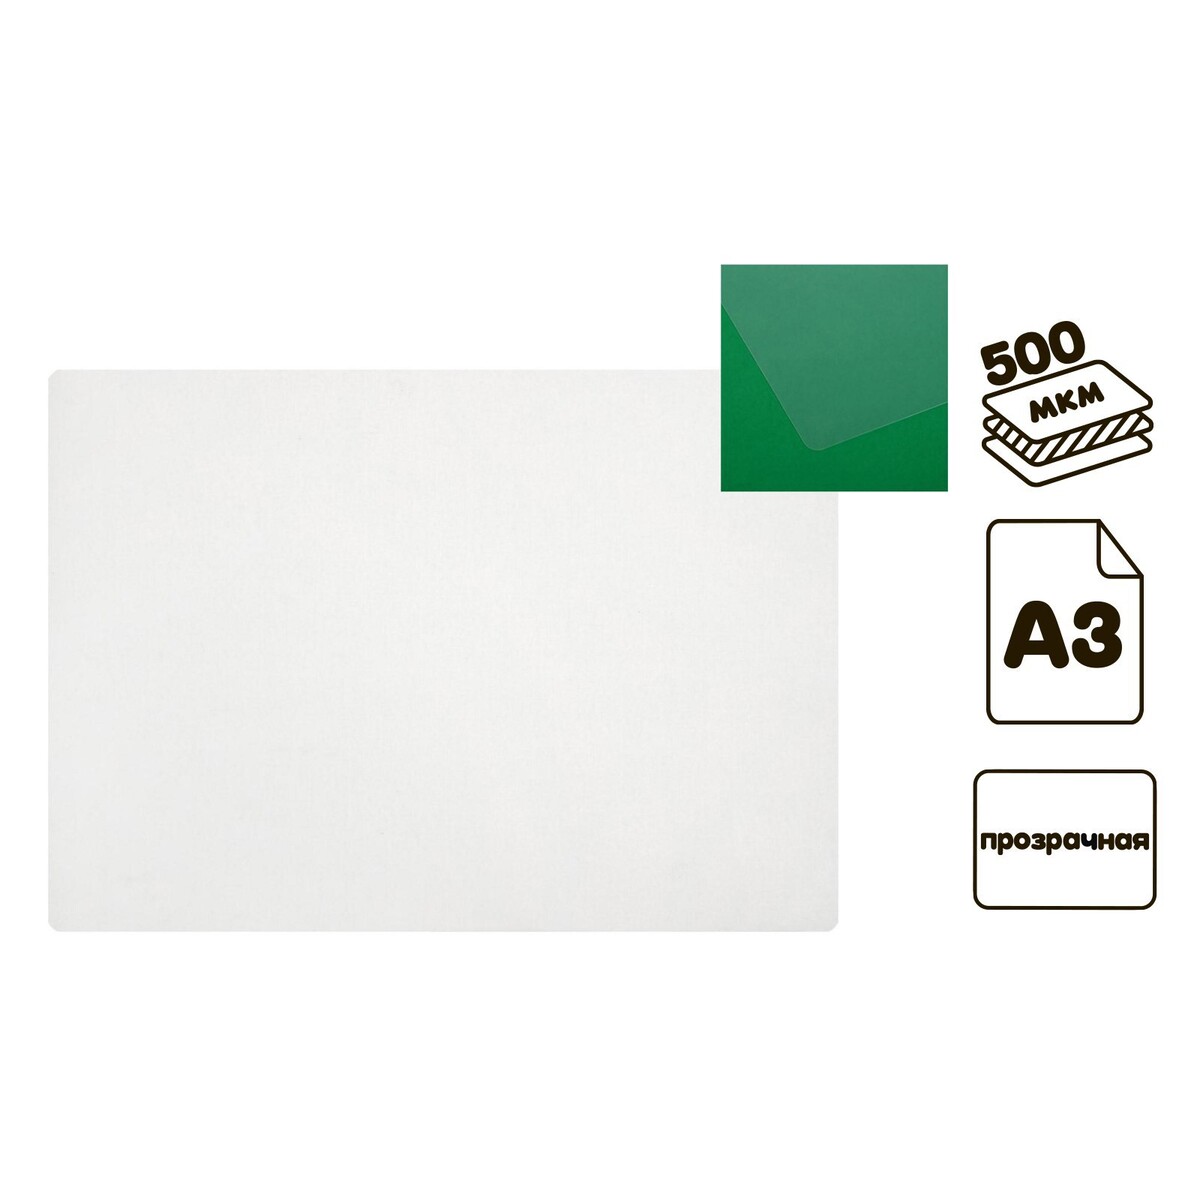 Накладка на стол пластиковая а3, 460 х 330 мм, 500 мкм, прозрачная, бесцветная (подходит для офиса) накладка на стол пластиковая а3 460 х 330 мм calligrata